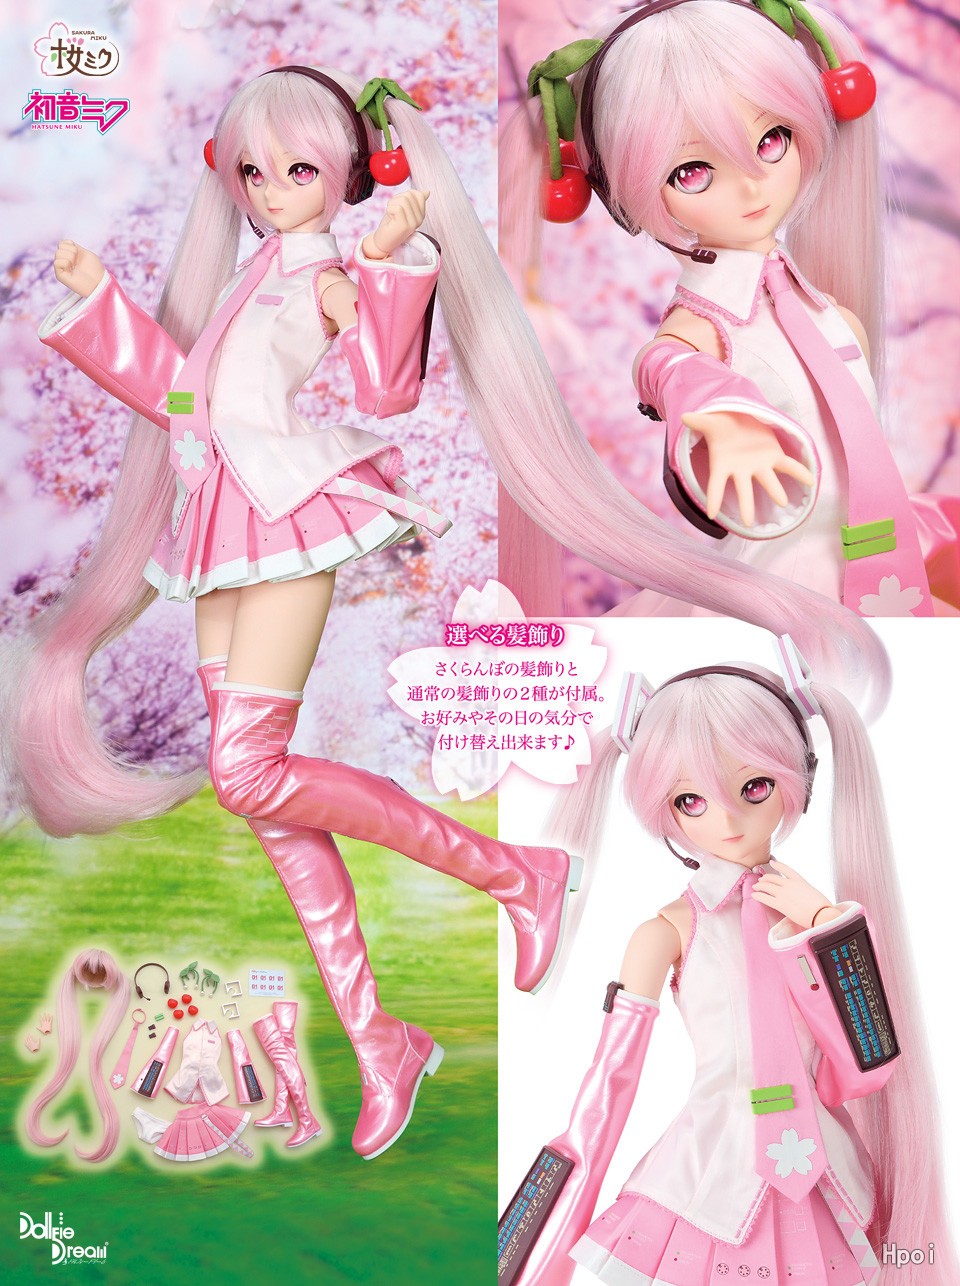 Dollfie Dream VOCALOID Sakura Miku-Garage Kit Dolls